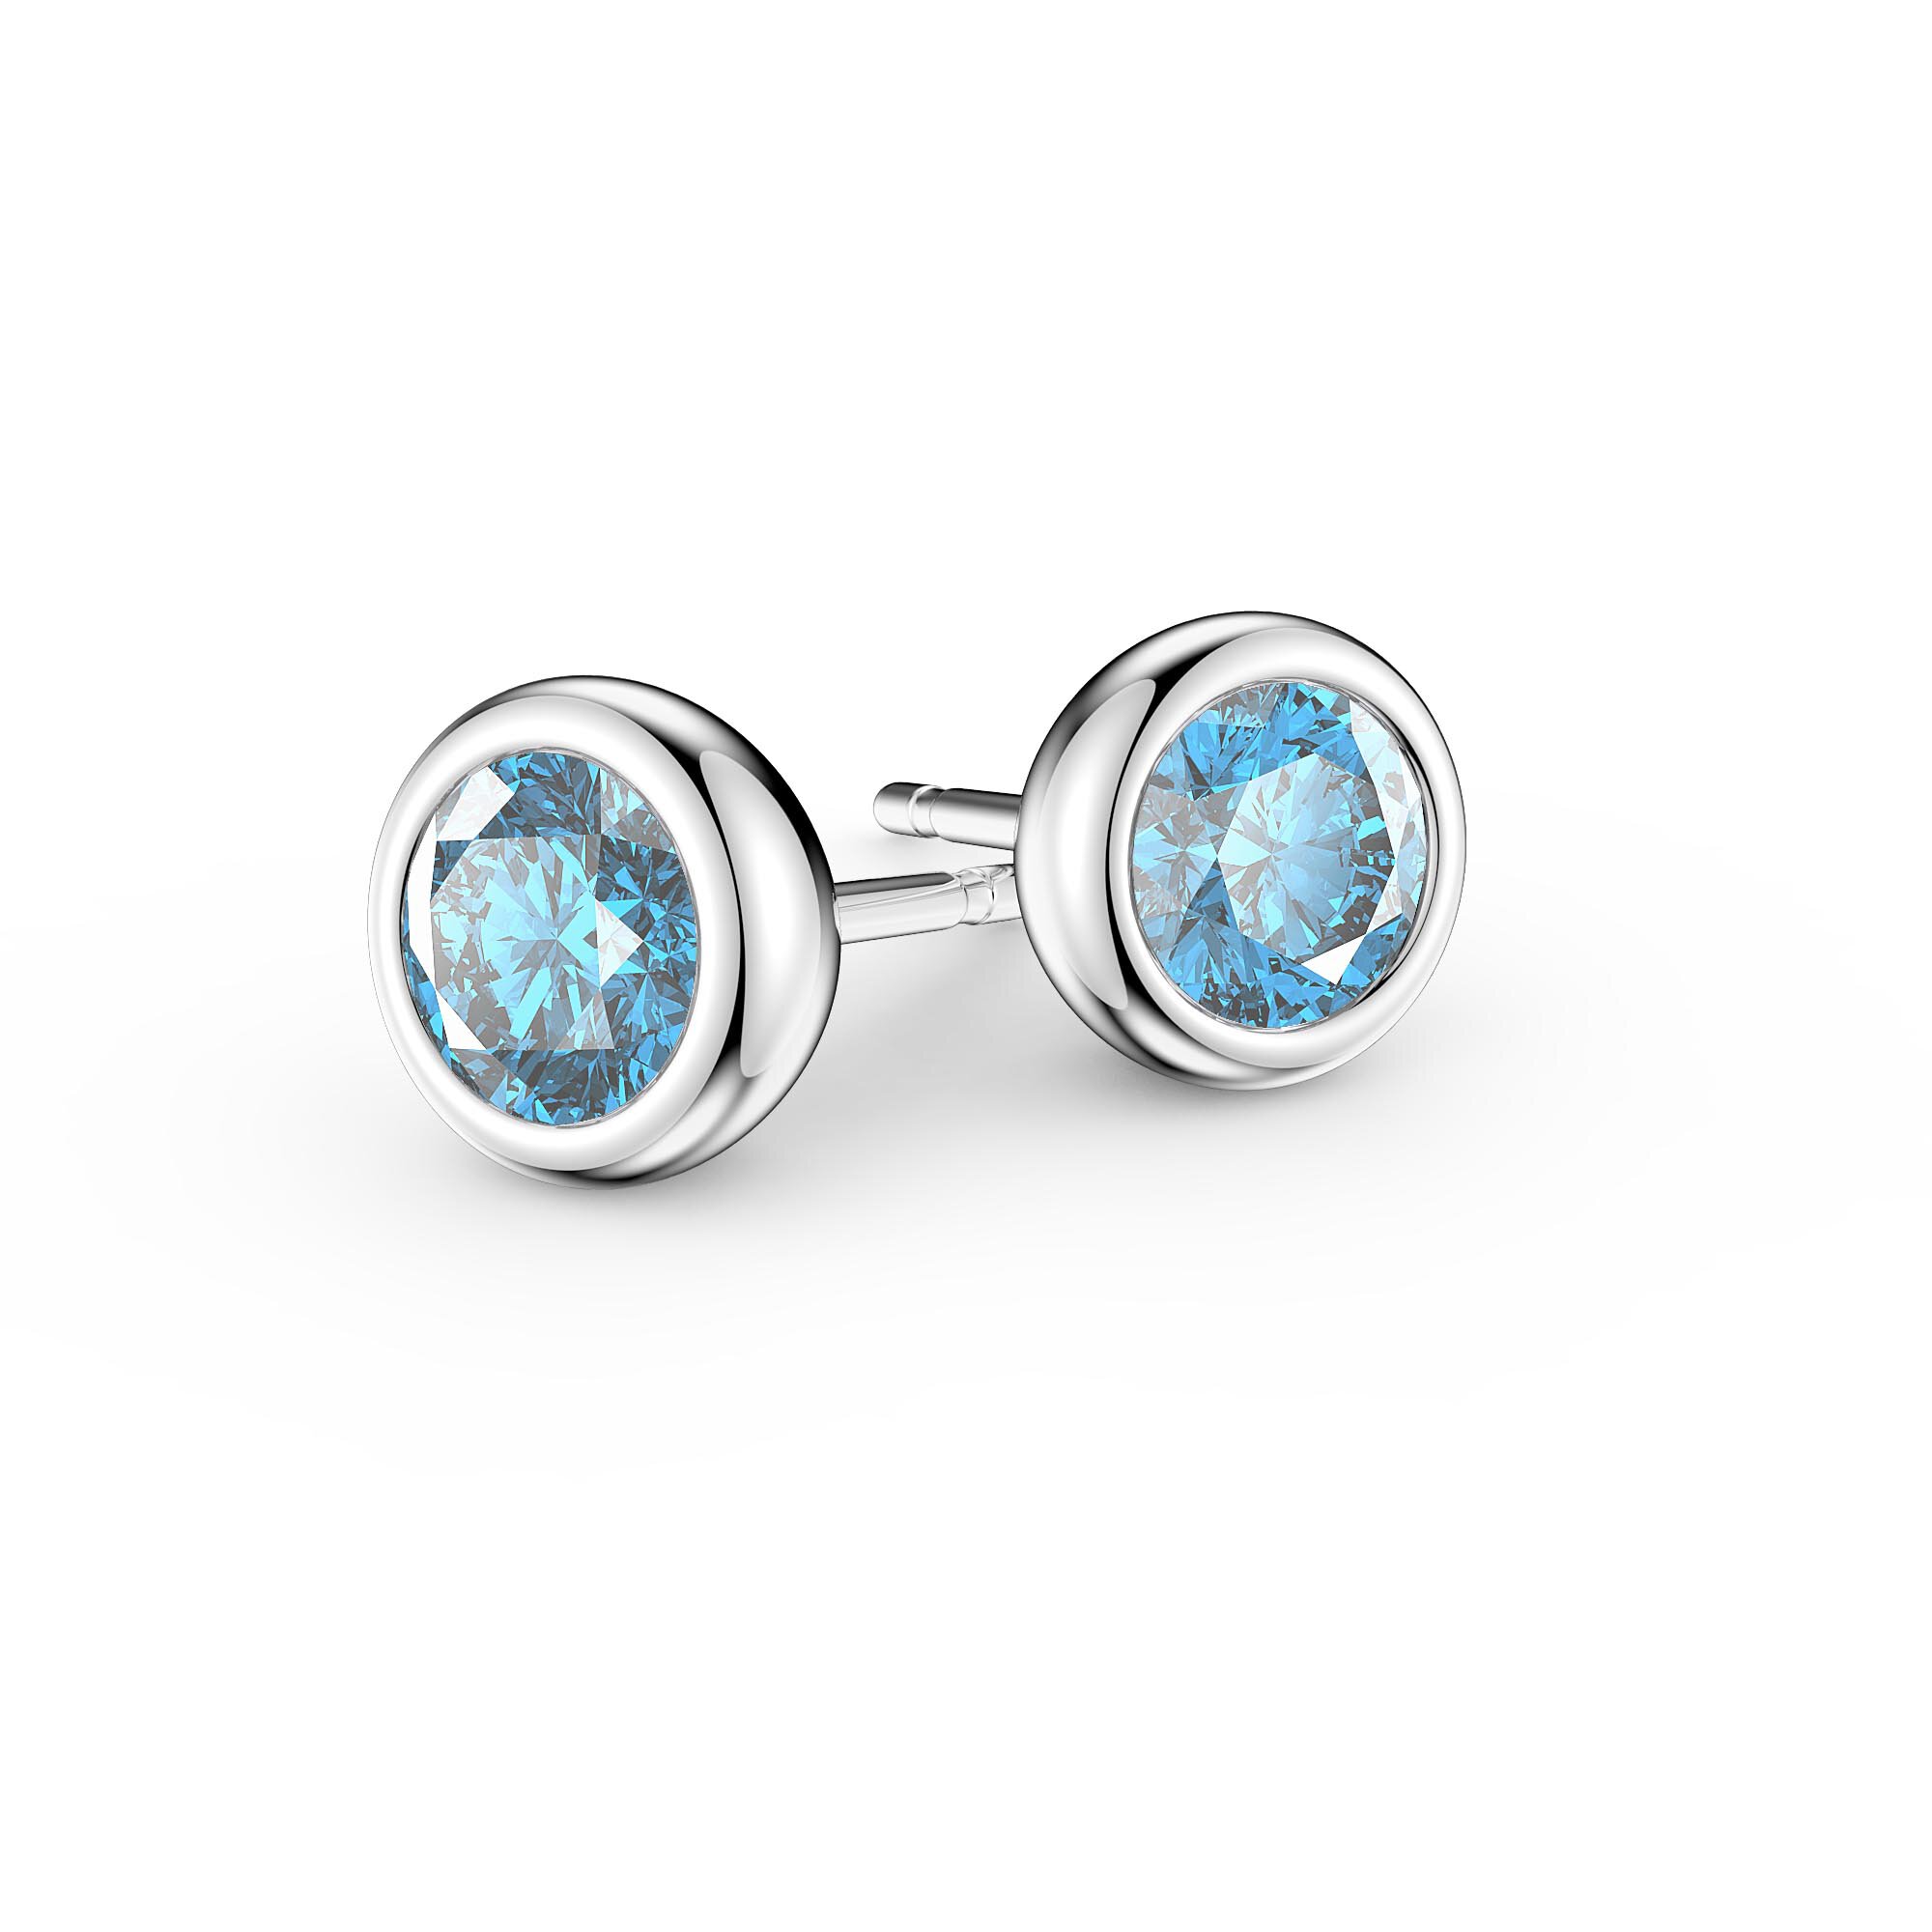 Aquamarine Earrings Sterling Silver,Wire Wrapped Herringbone Aquamarine  Earrings,Aquamarine Dangle Earrings,March Birthstone earrings Gold